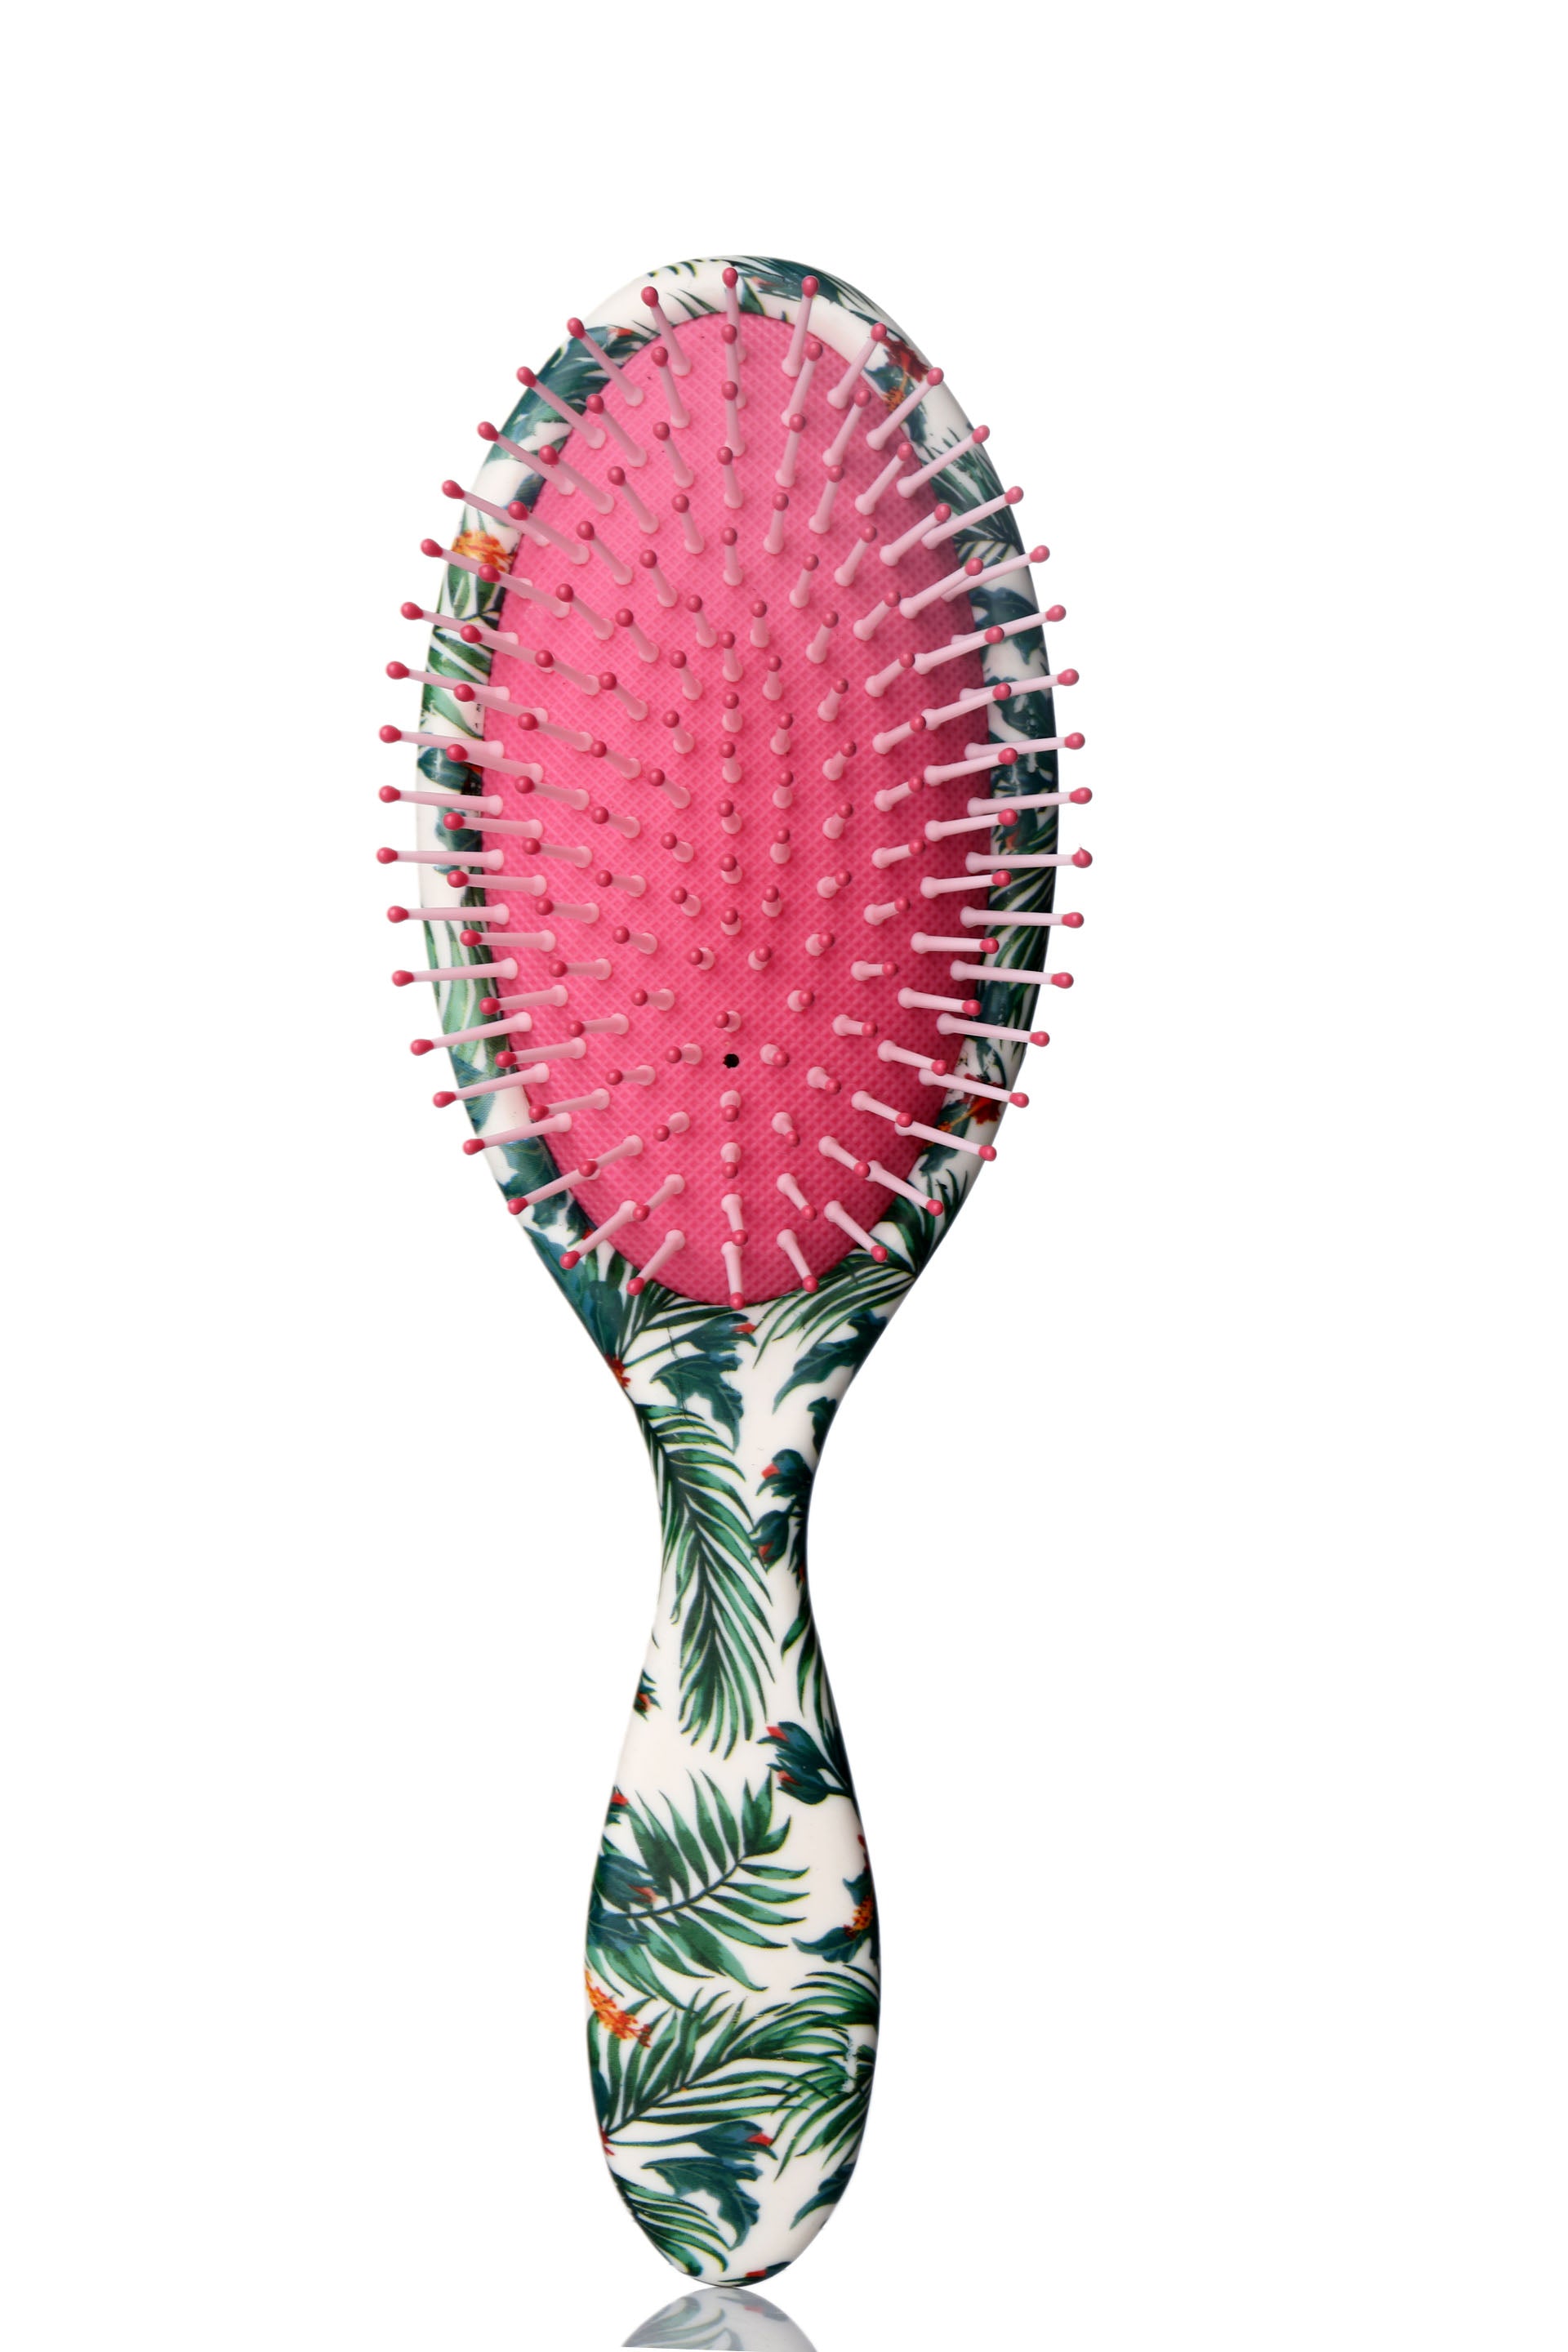 Classic Detangle & Smooth Hair Brush | Buy Detangling Brushes Online